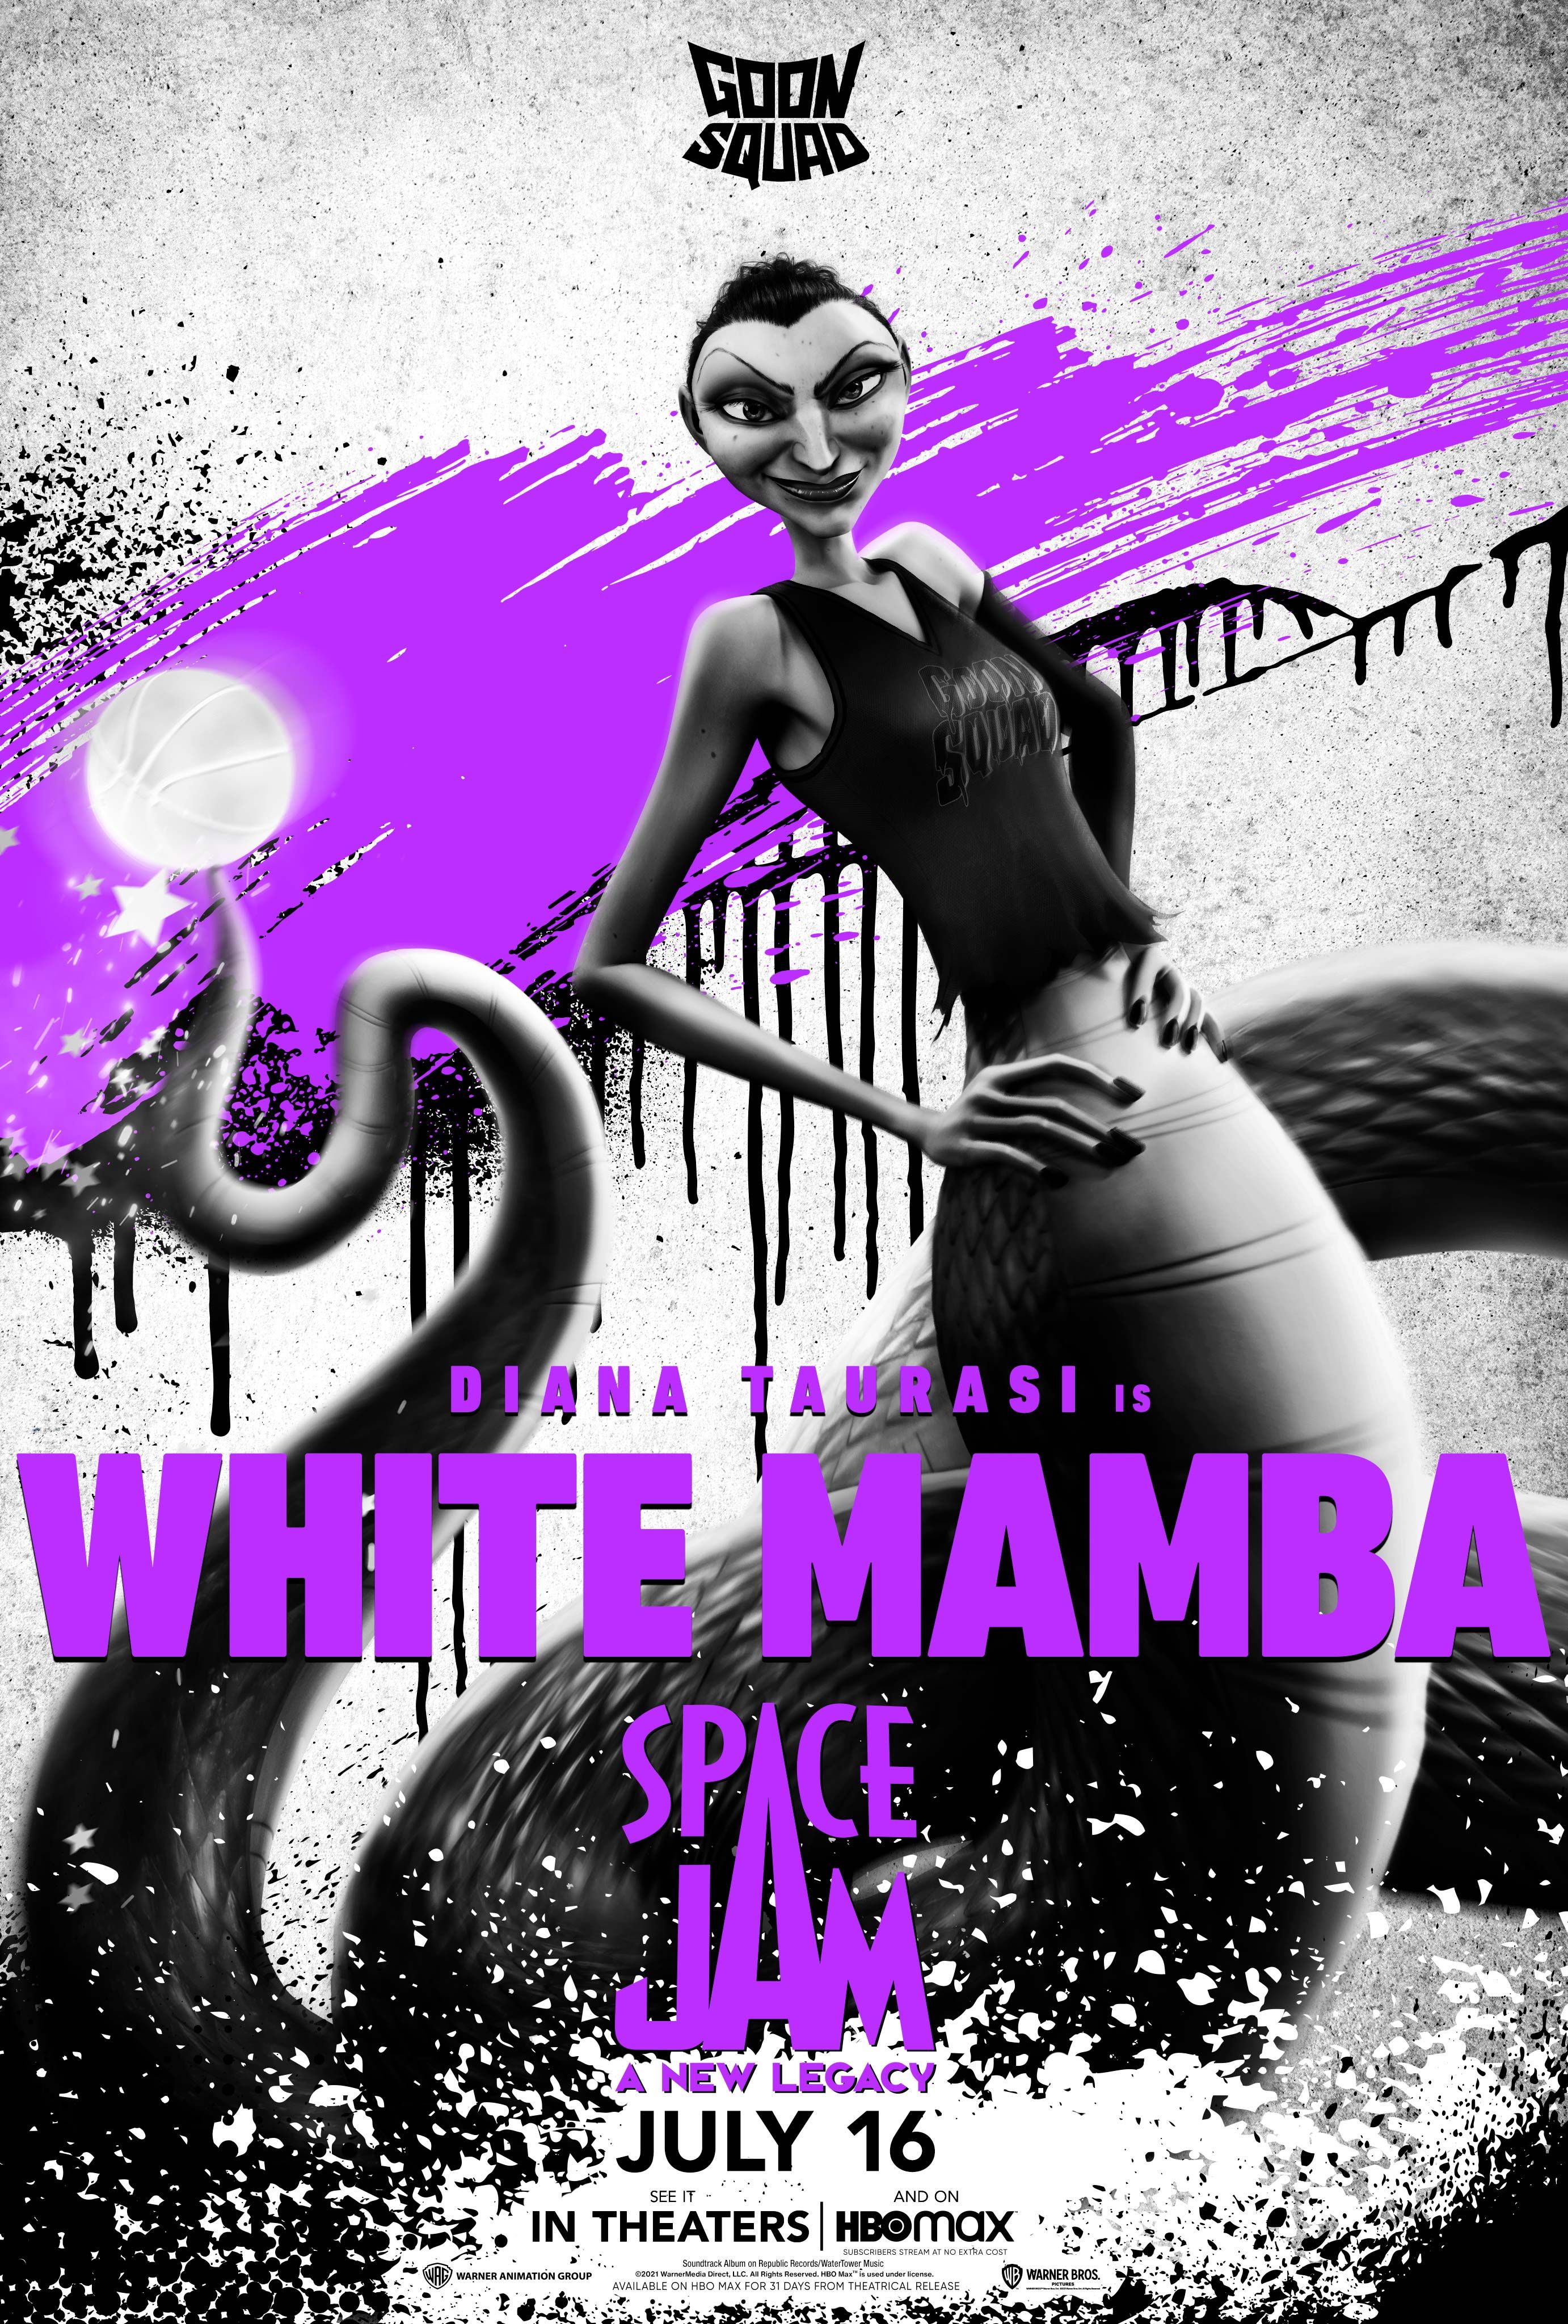 Diana Taurasi as White Mamba in Space Jam 2